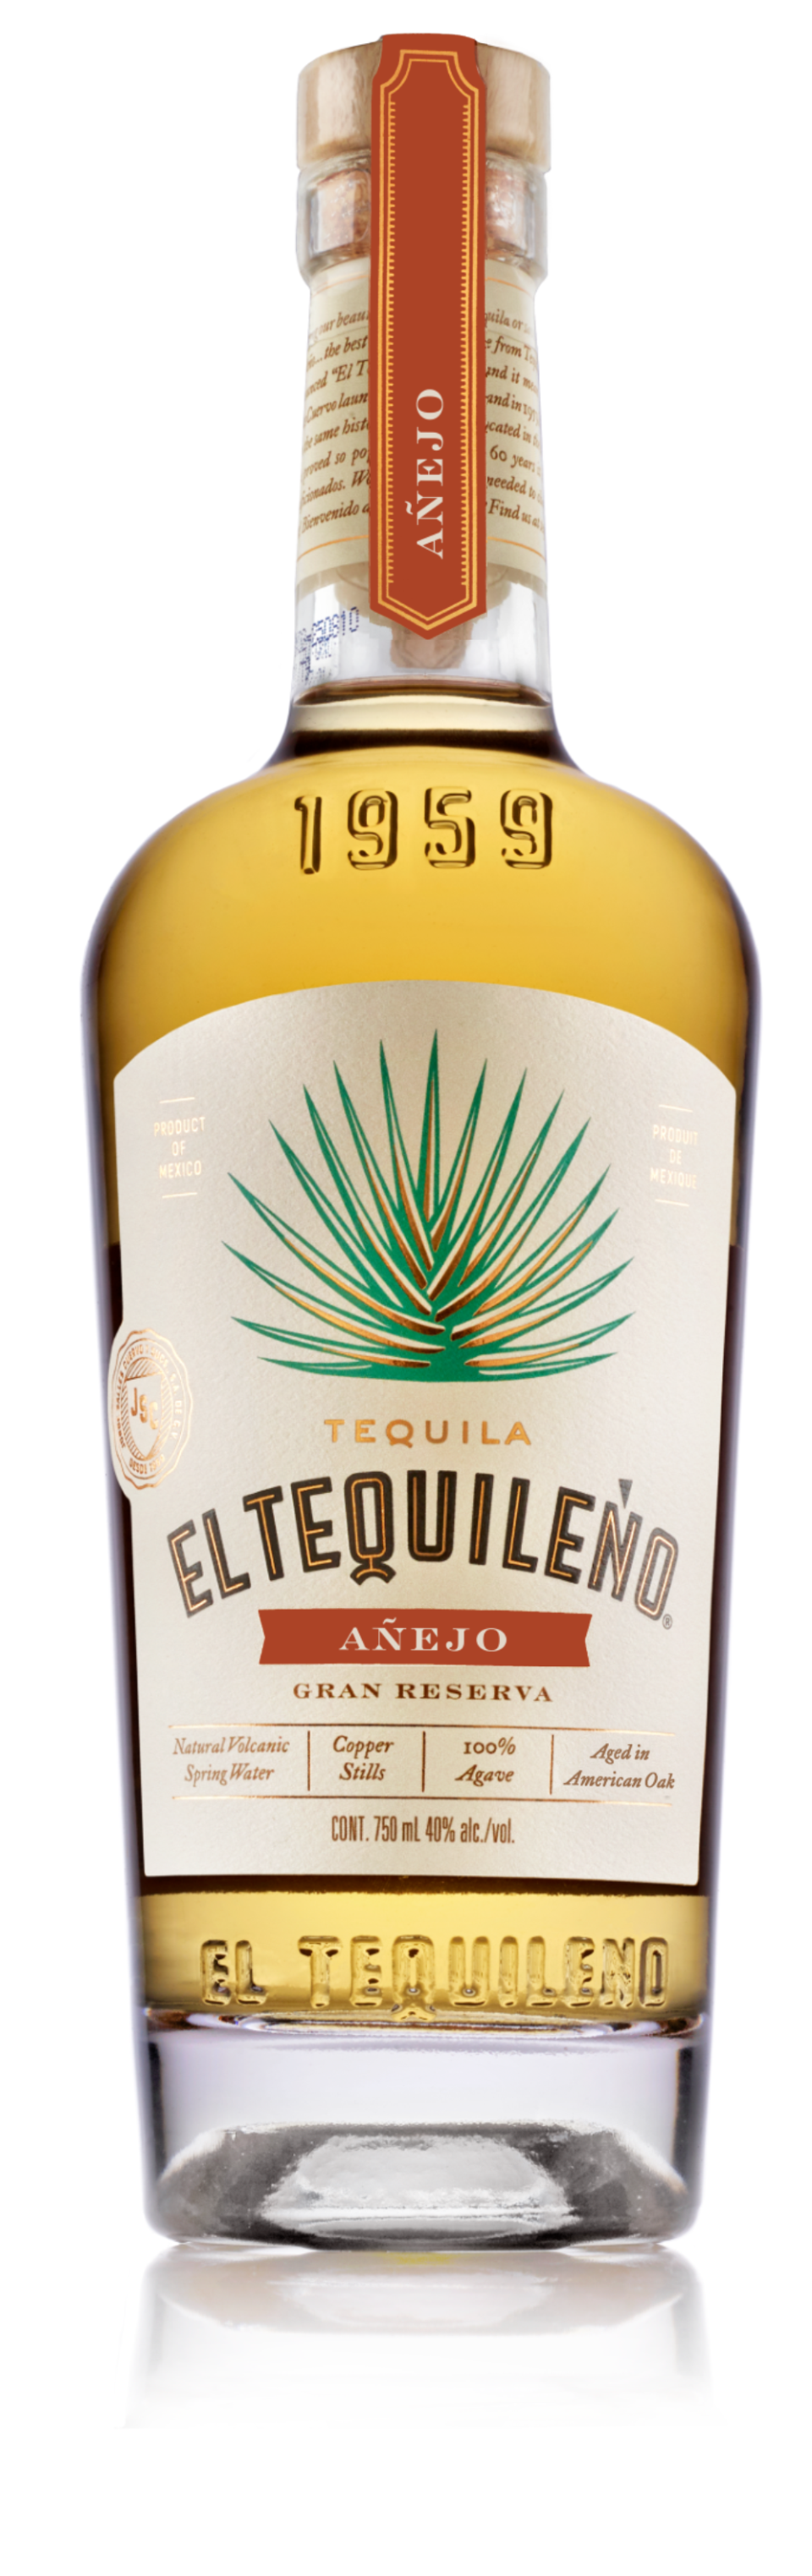 Best Tequila Brands, El Tequileno bottle shot